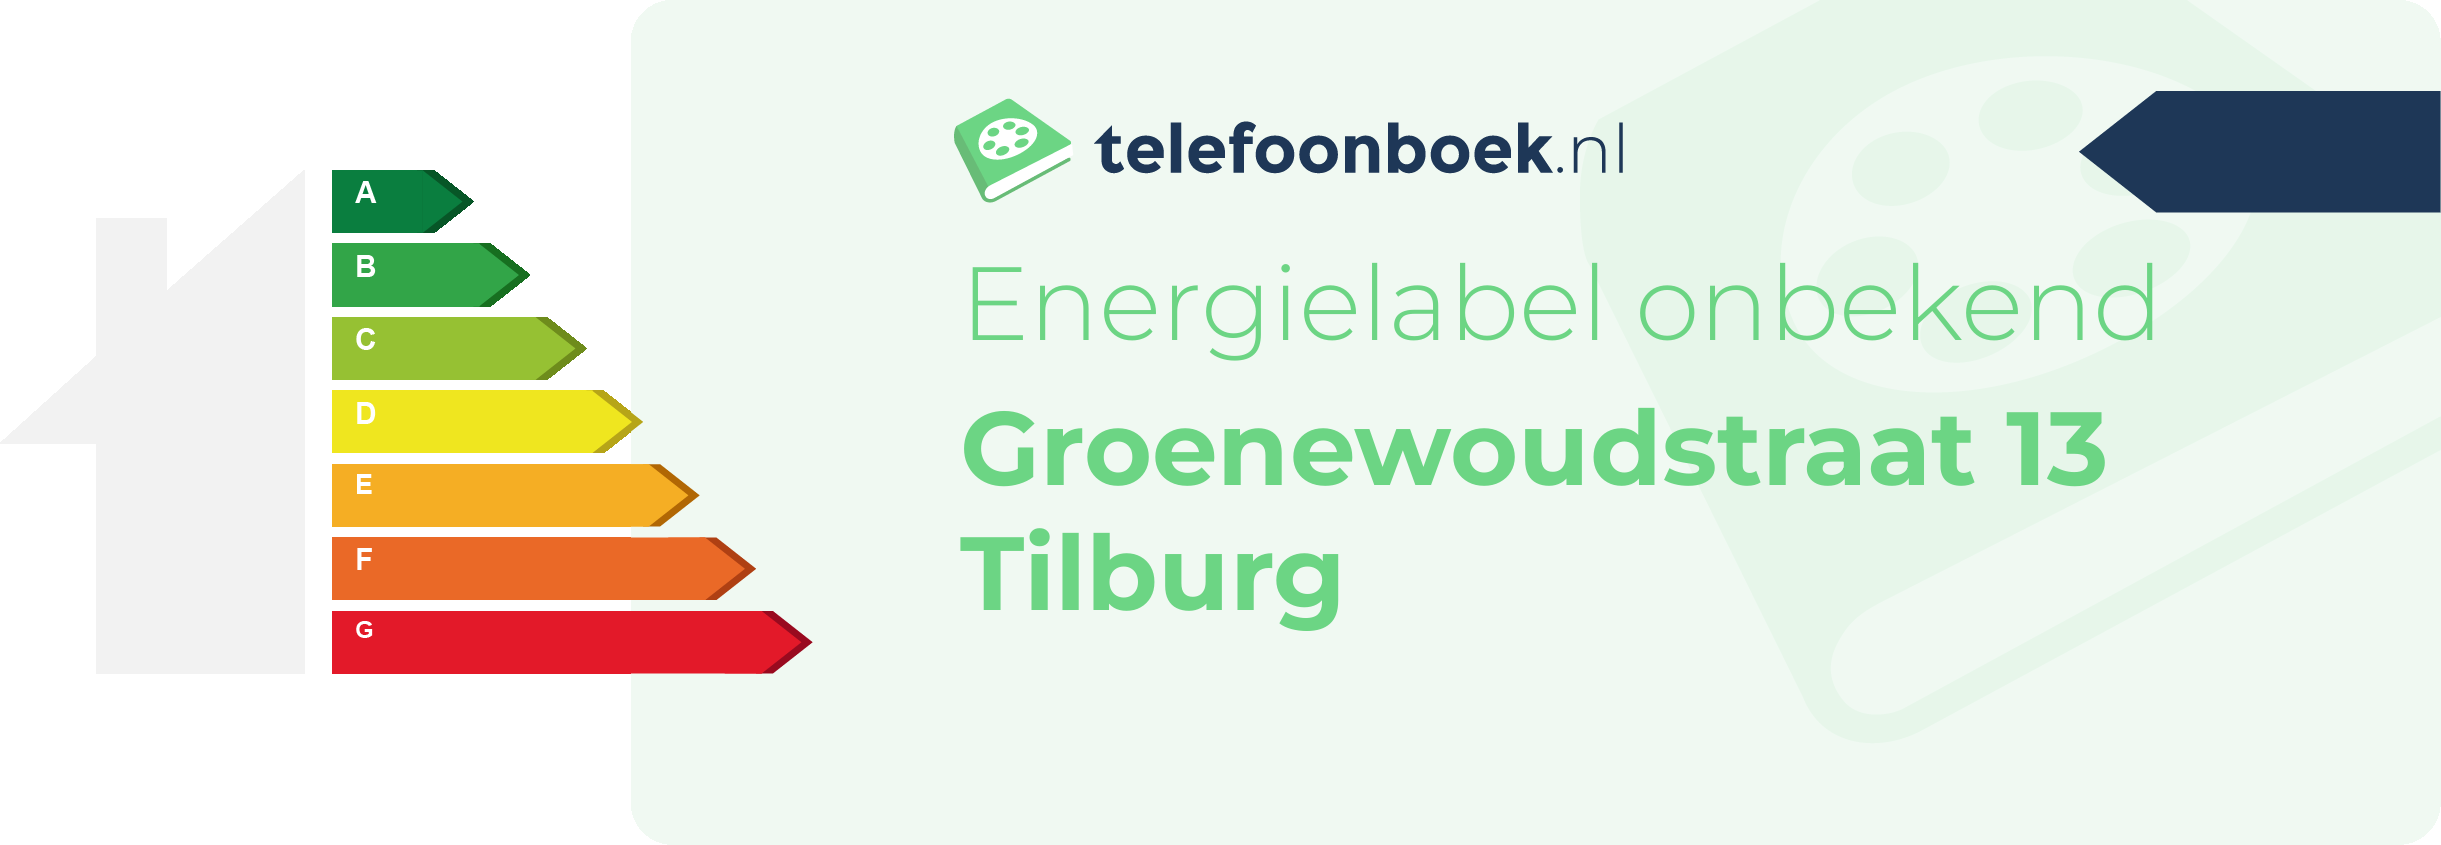 Energielabel Groenewoudstraat 13 Tilburg